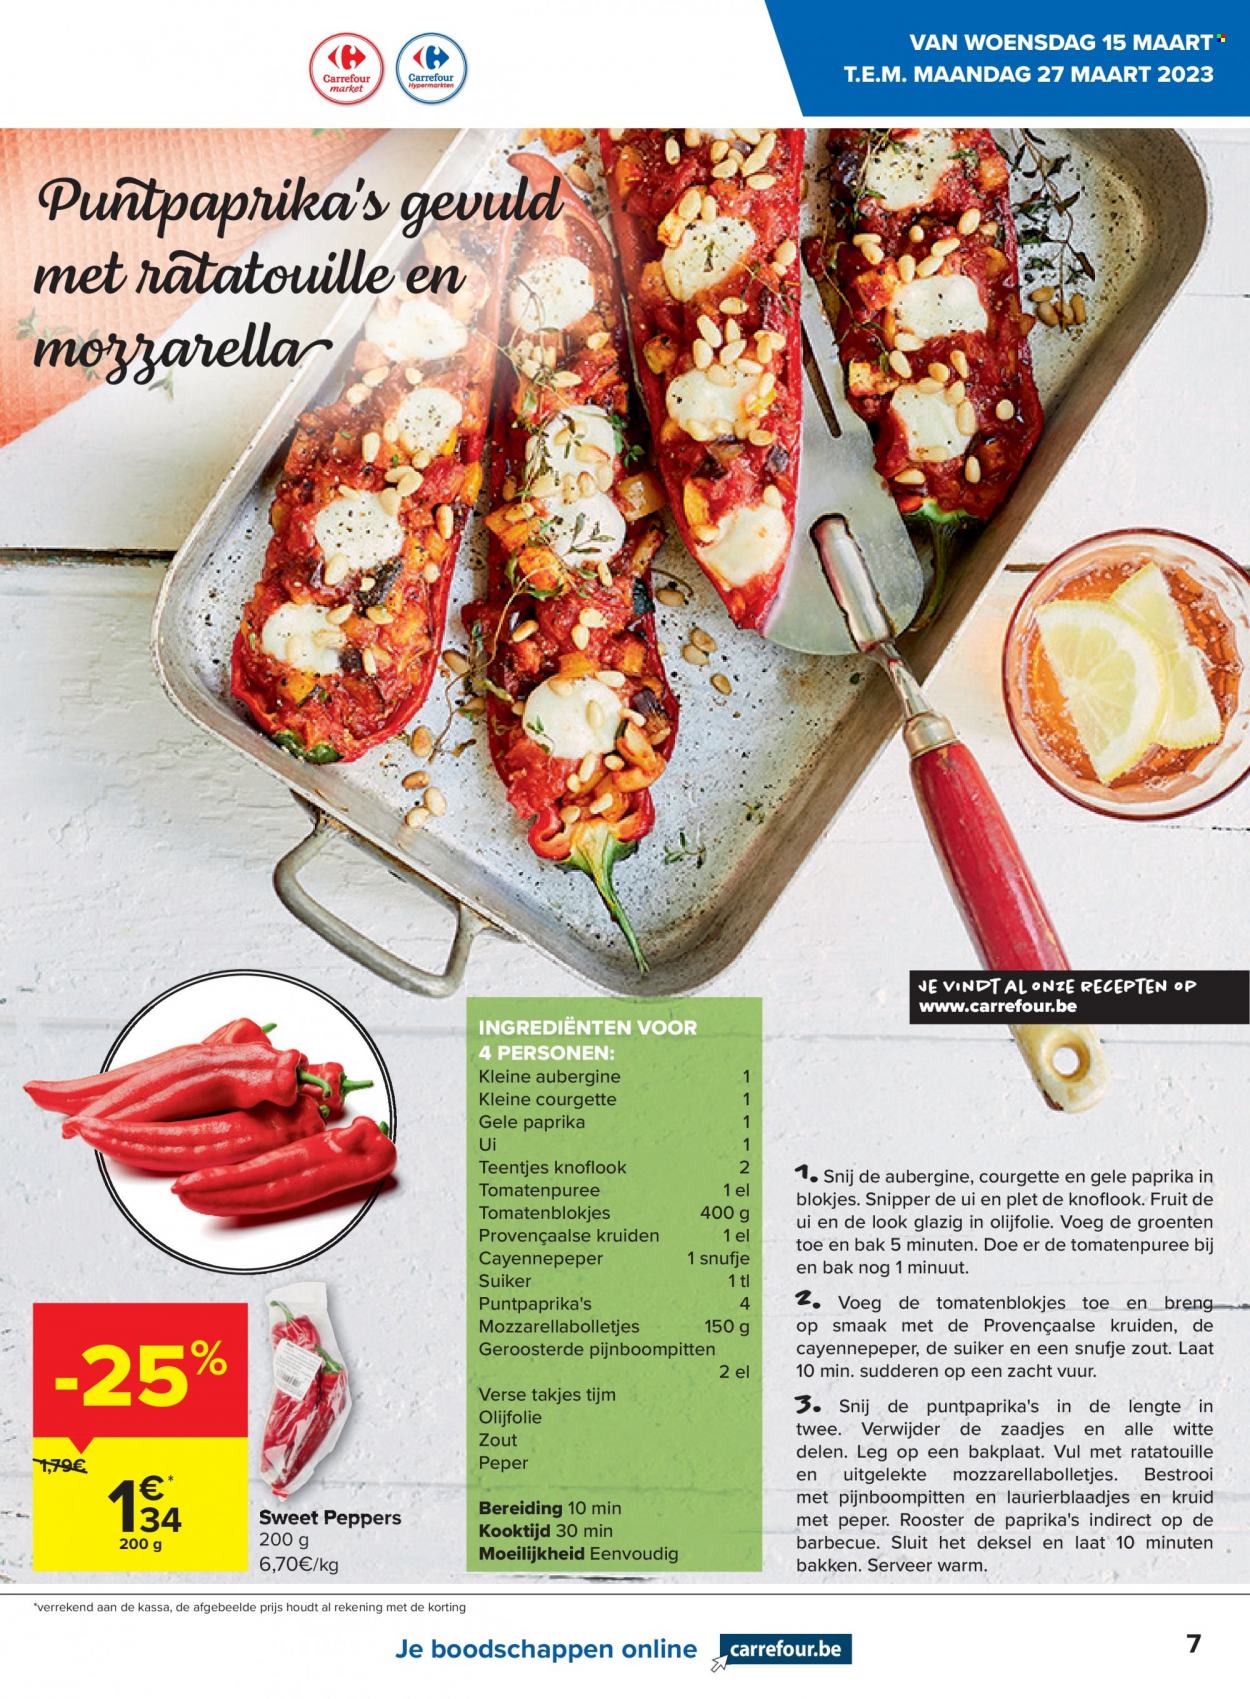 thumbnail - Catalogue Carrefour - 15/03/2023 - 27/03/2023 - Produits soldés - courgette, ratatouille, fromage, mozzarella, barbecue. Page 7.